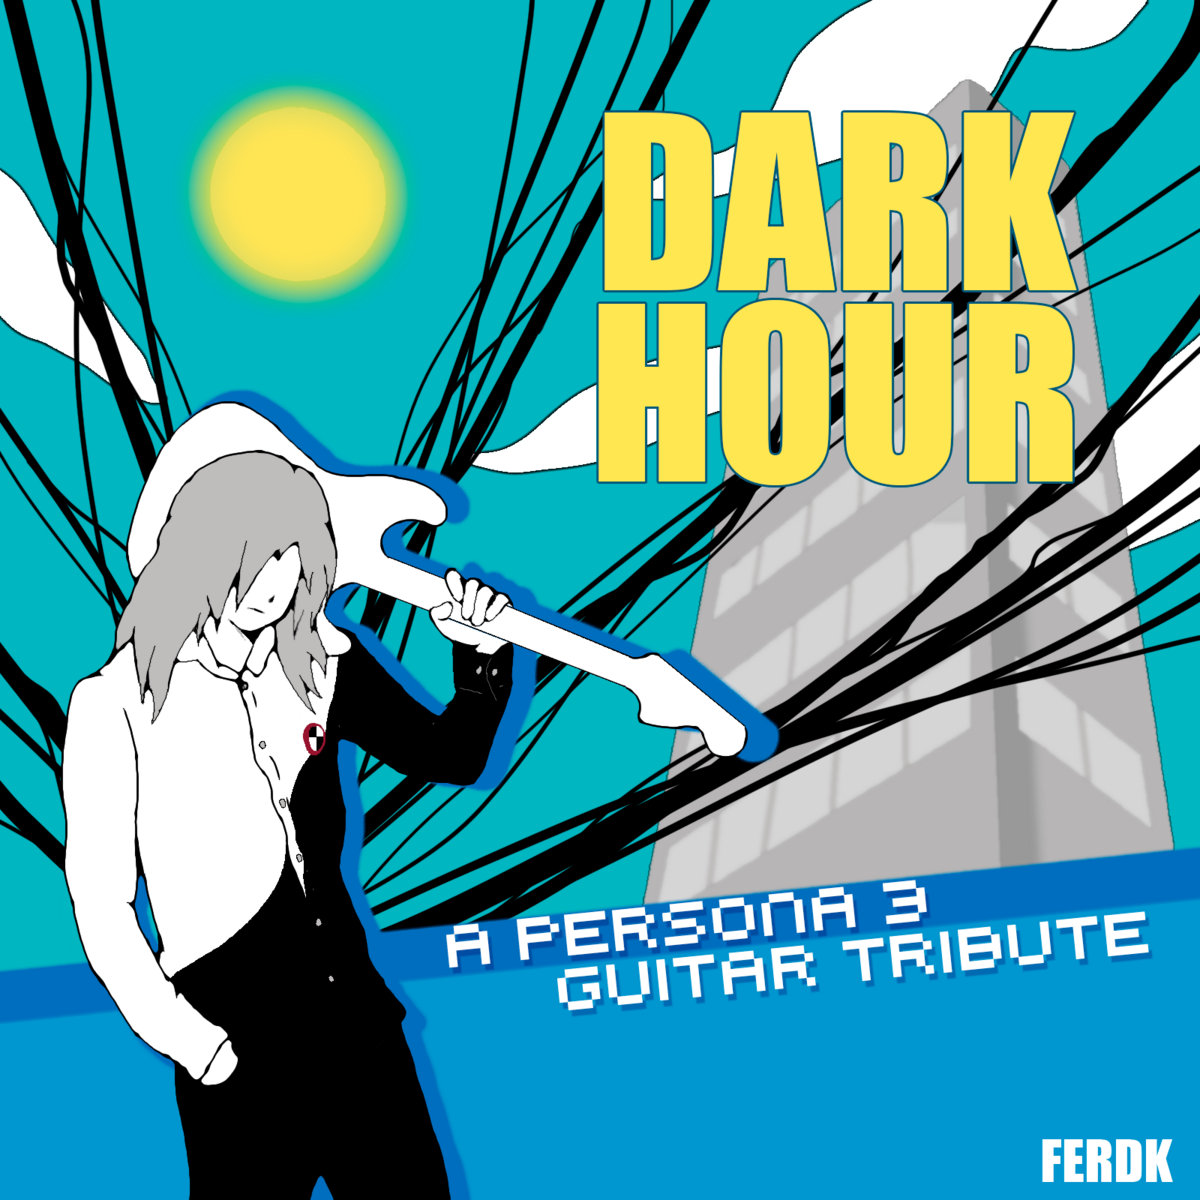 Dark Hour (A “Persona 3” Guitar Tribute)